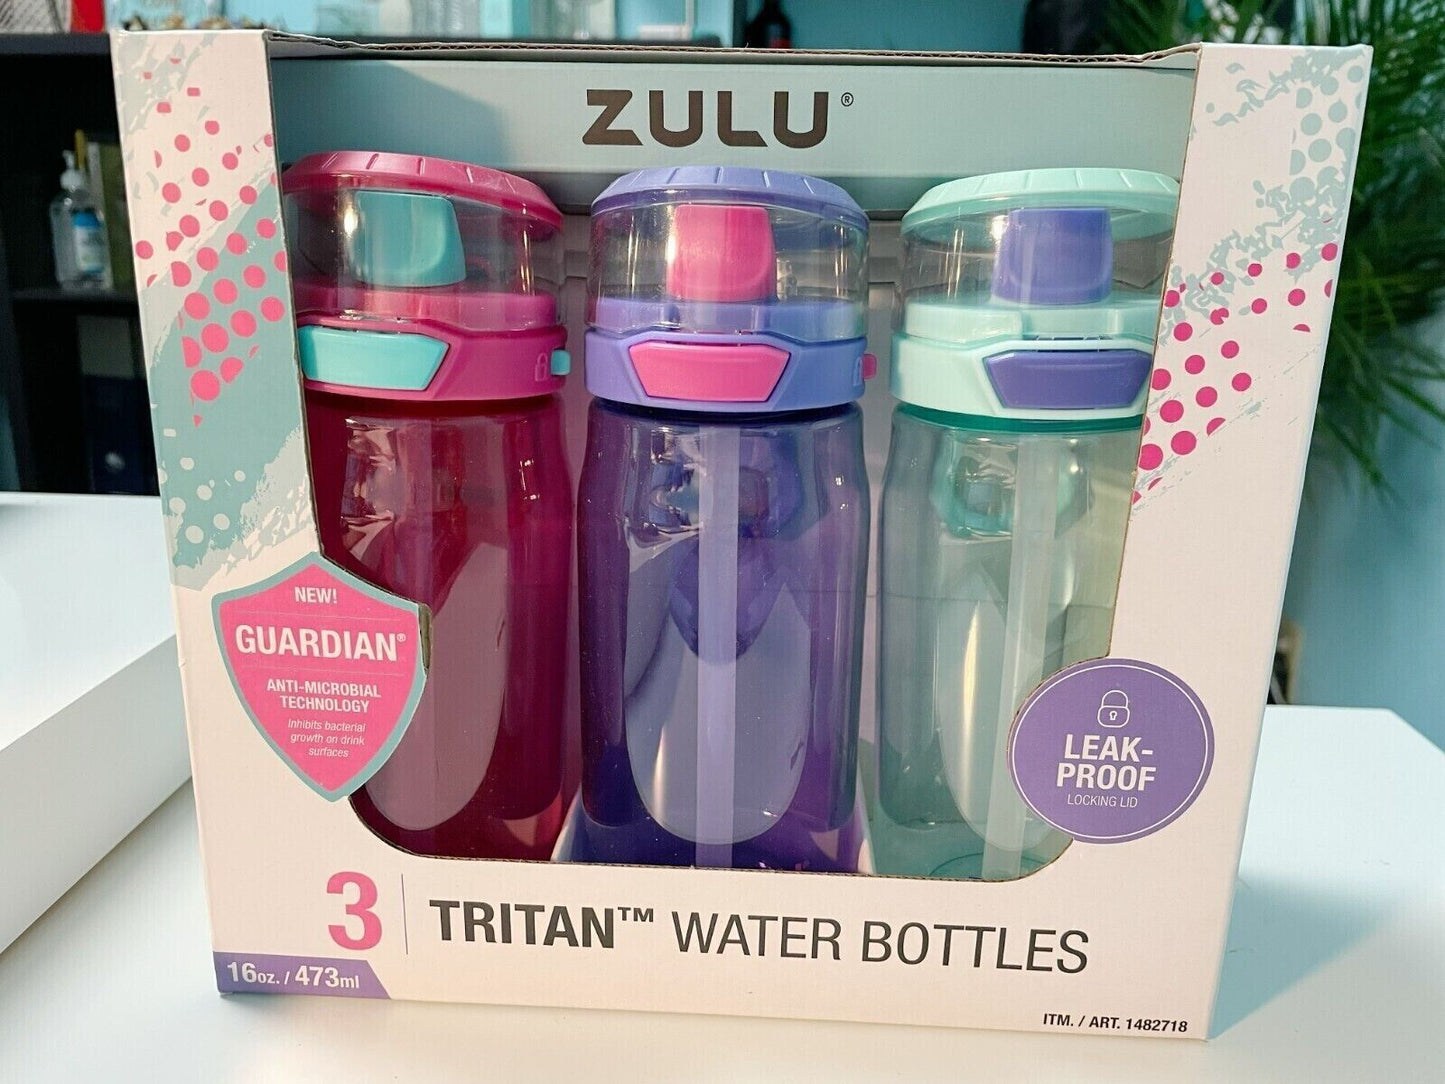 ZULU Tritan Leak-Proof Water Bottles-3 Pack (16 oz/473ml Each)